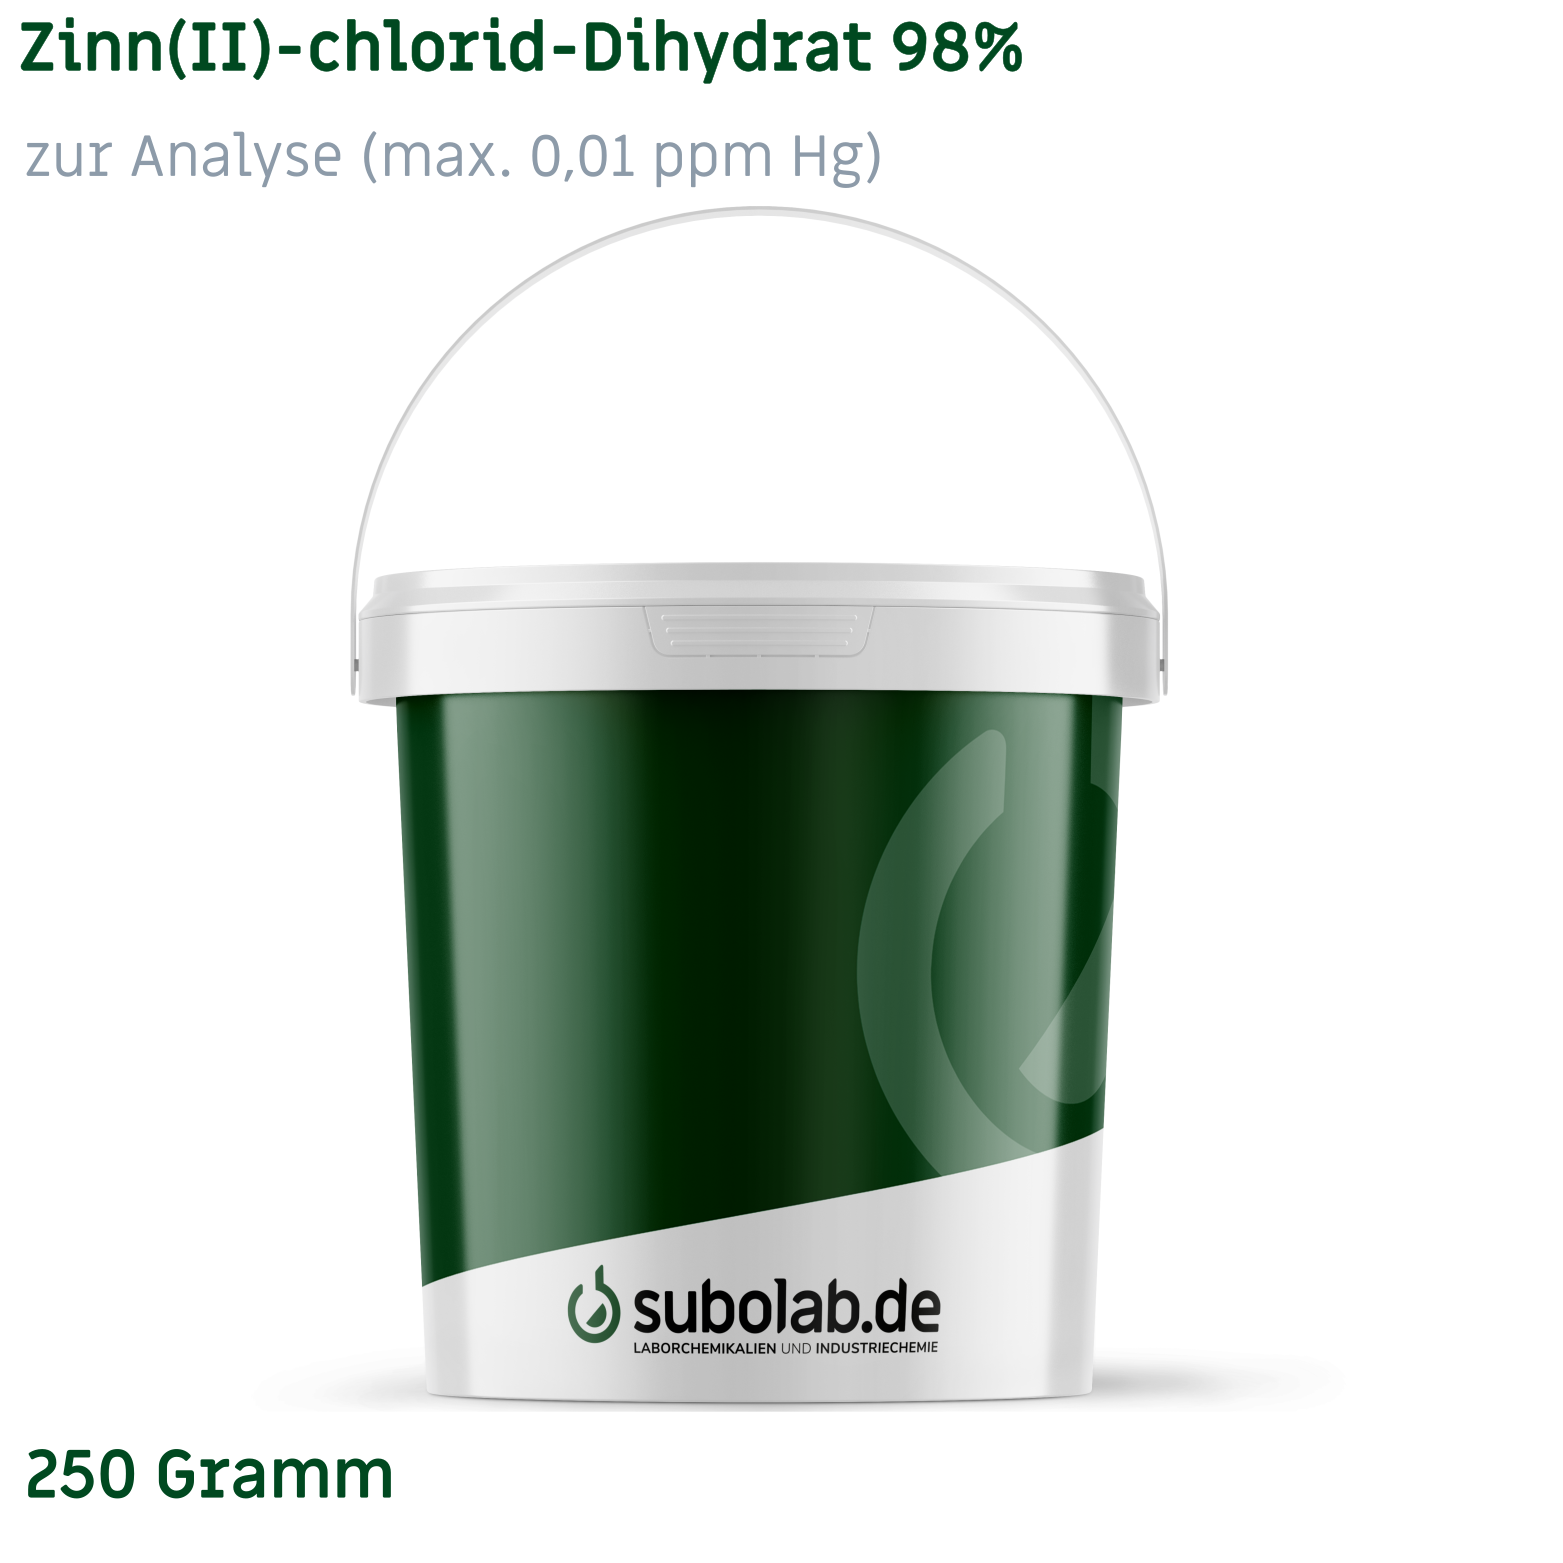 Bild von Zinn(II)-chlorid - Dihydrat 98% zur Analyse (max. 0,01 ppm Hg) (250 Gramm)